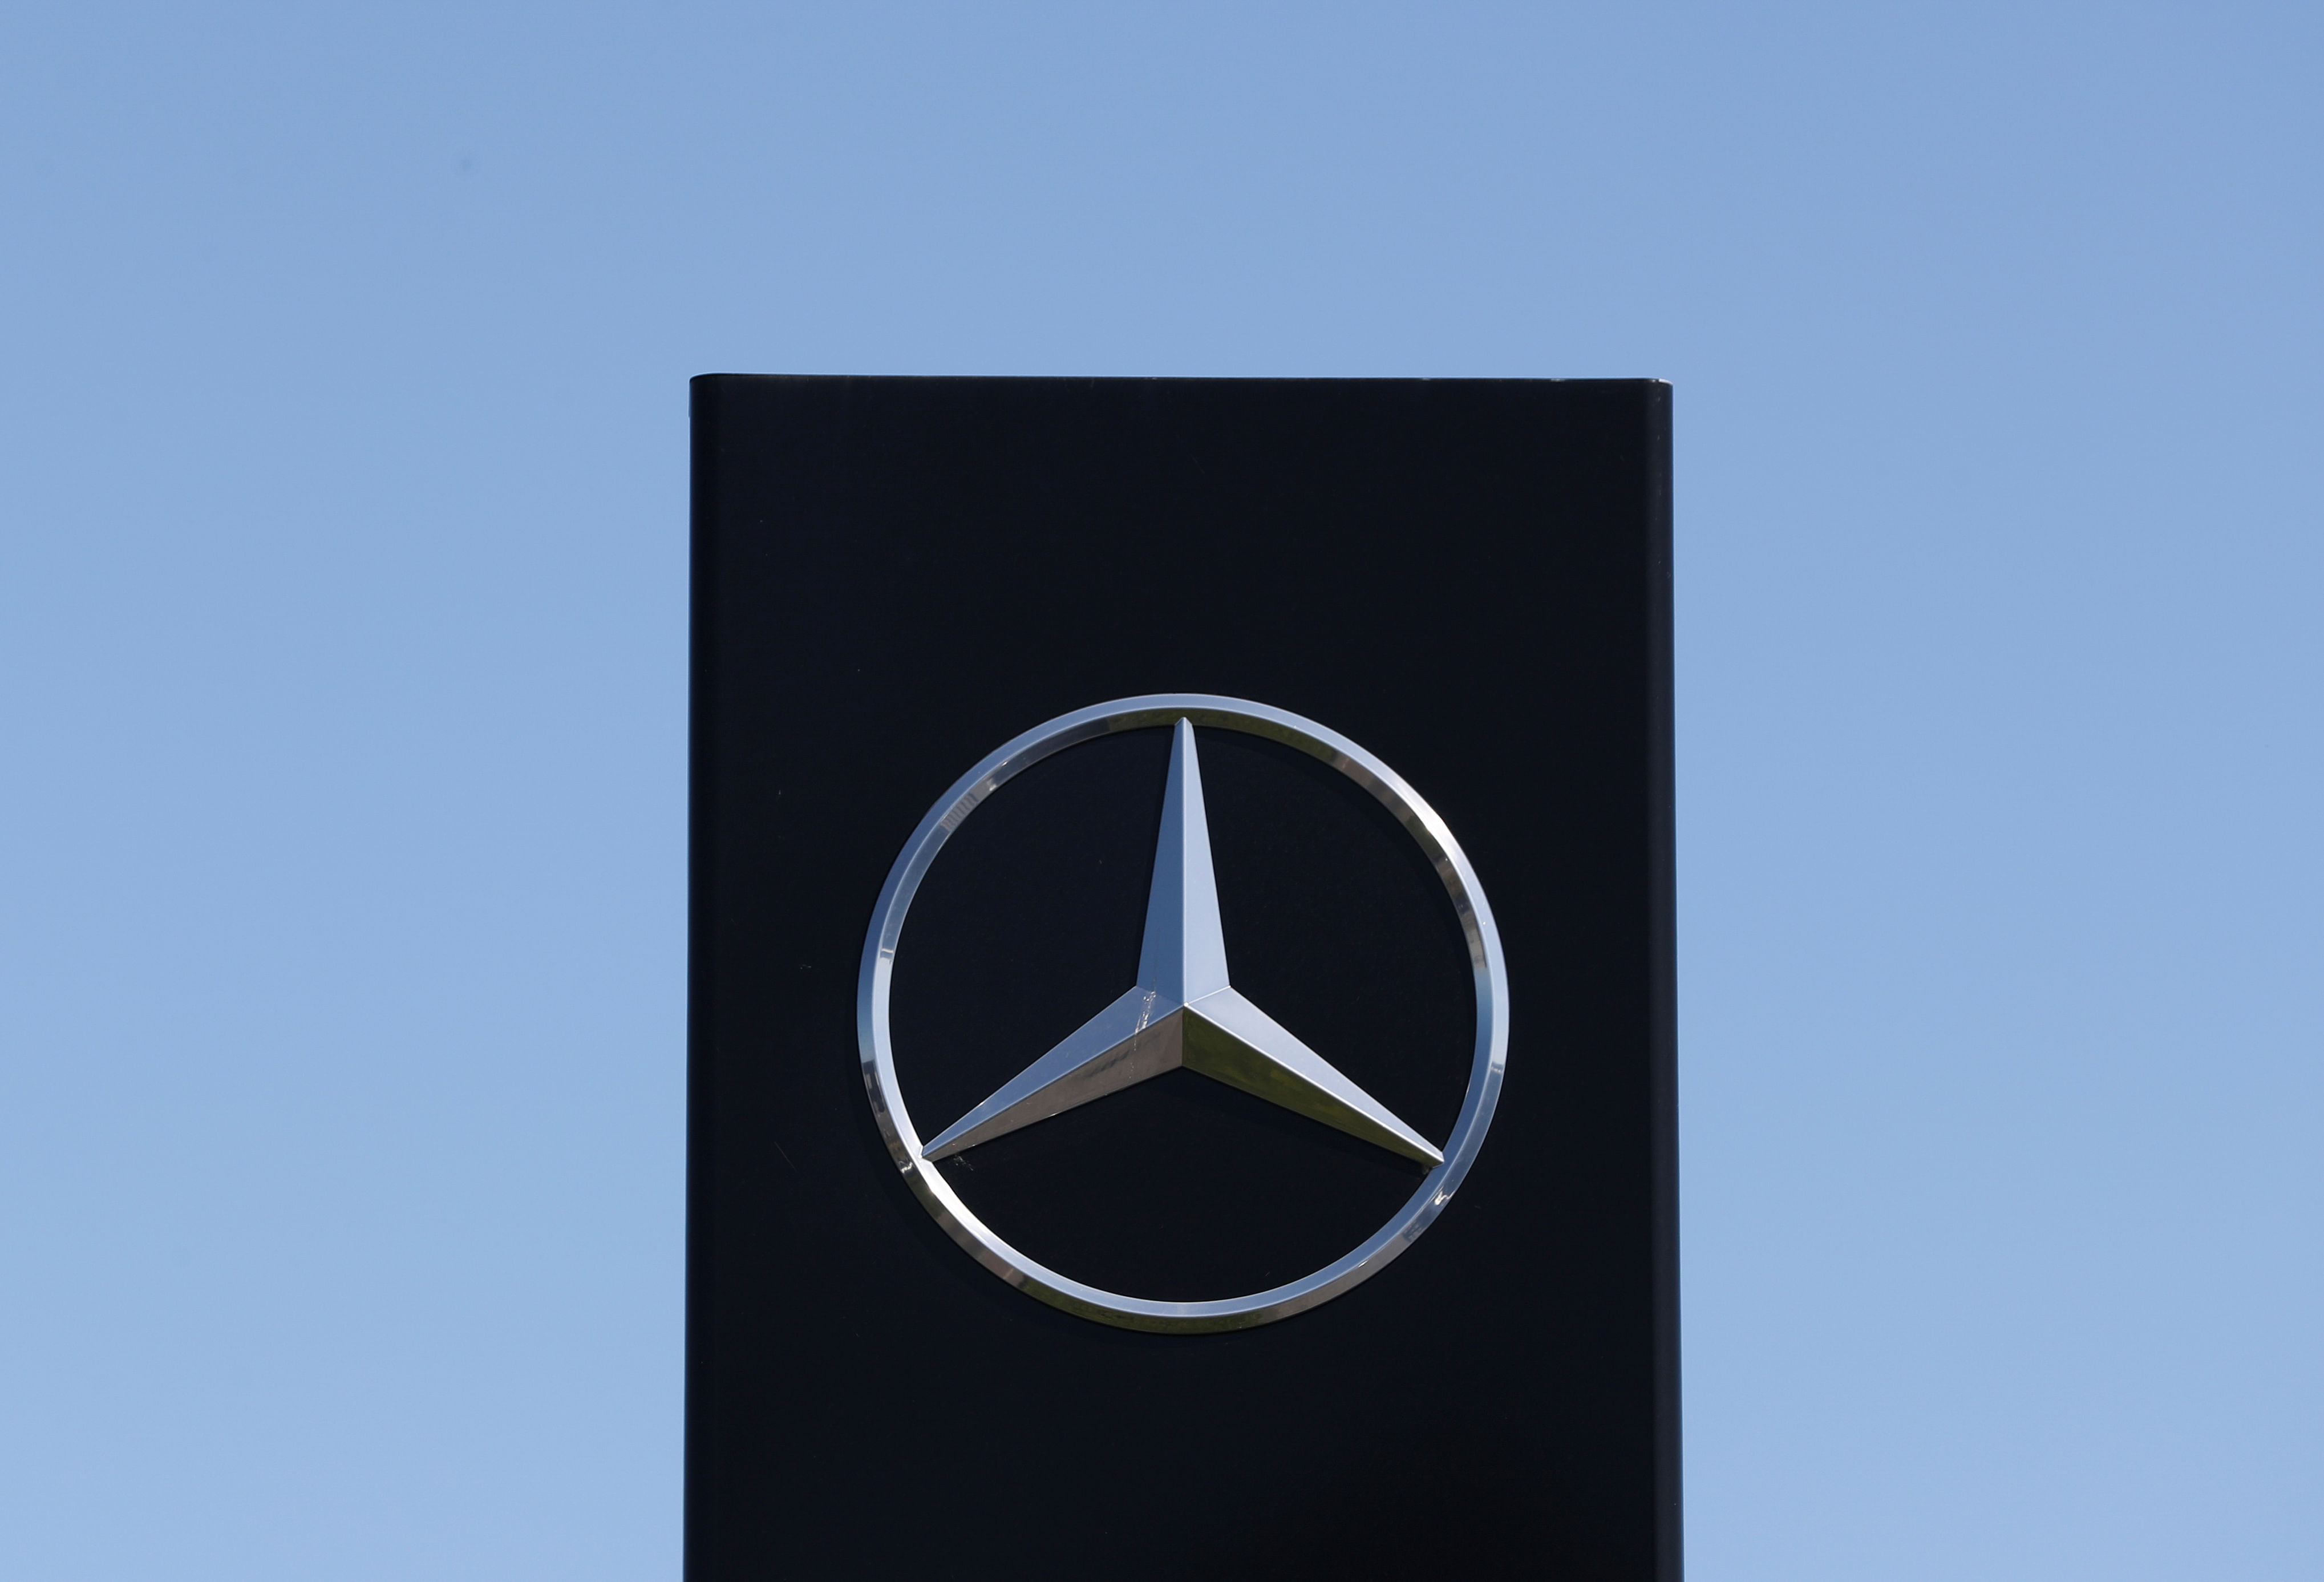 Mercedes Benz logo. Credit: Reuters Photo